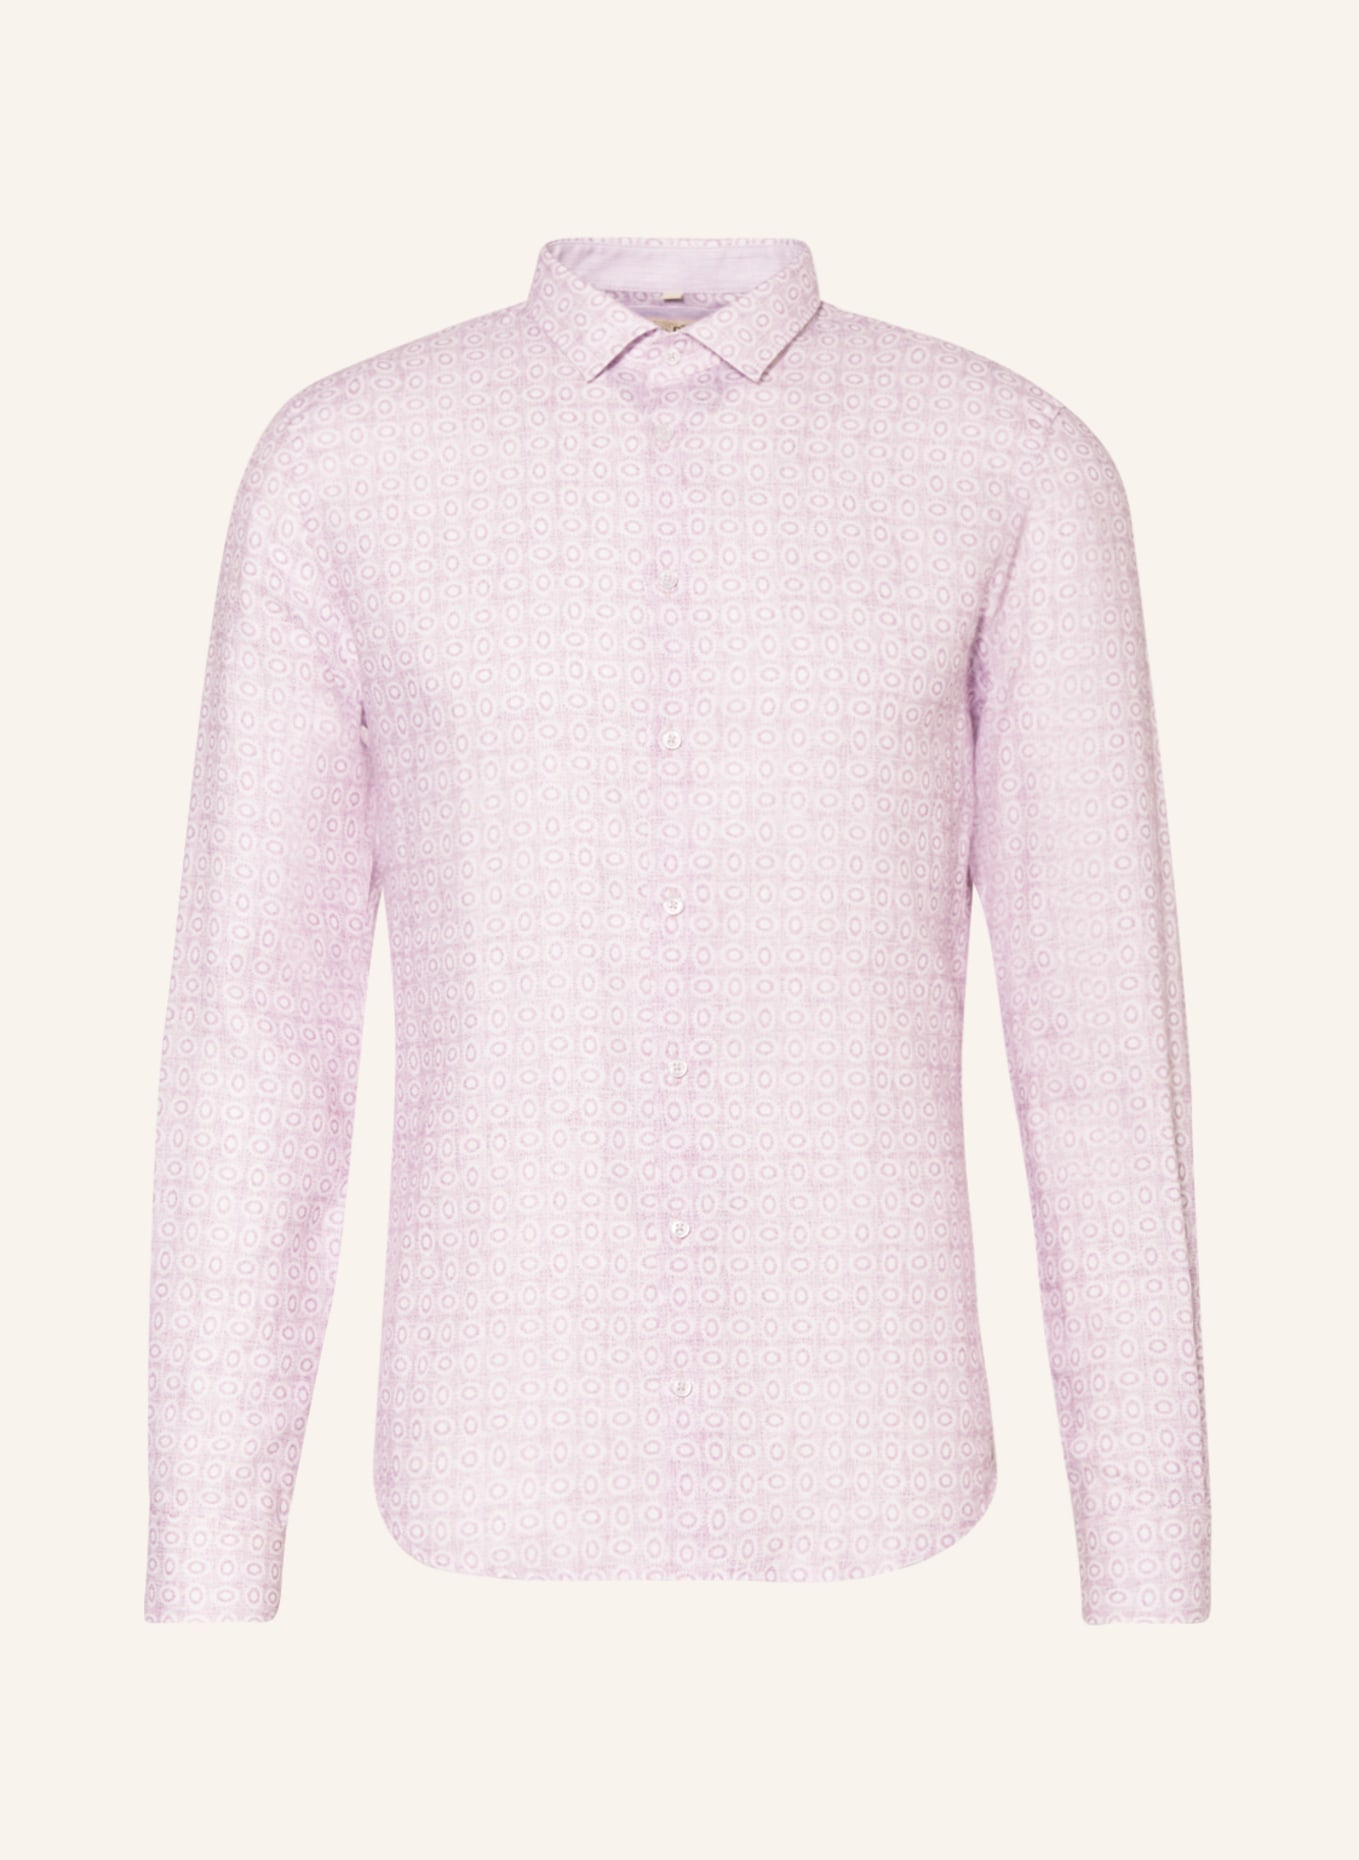 Q1 Manufaktur Linen shirt extra slim fit, Color: LIGHT PURPLE/ ECRU (Image 1)